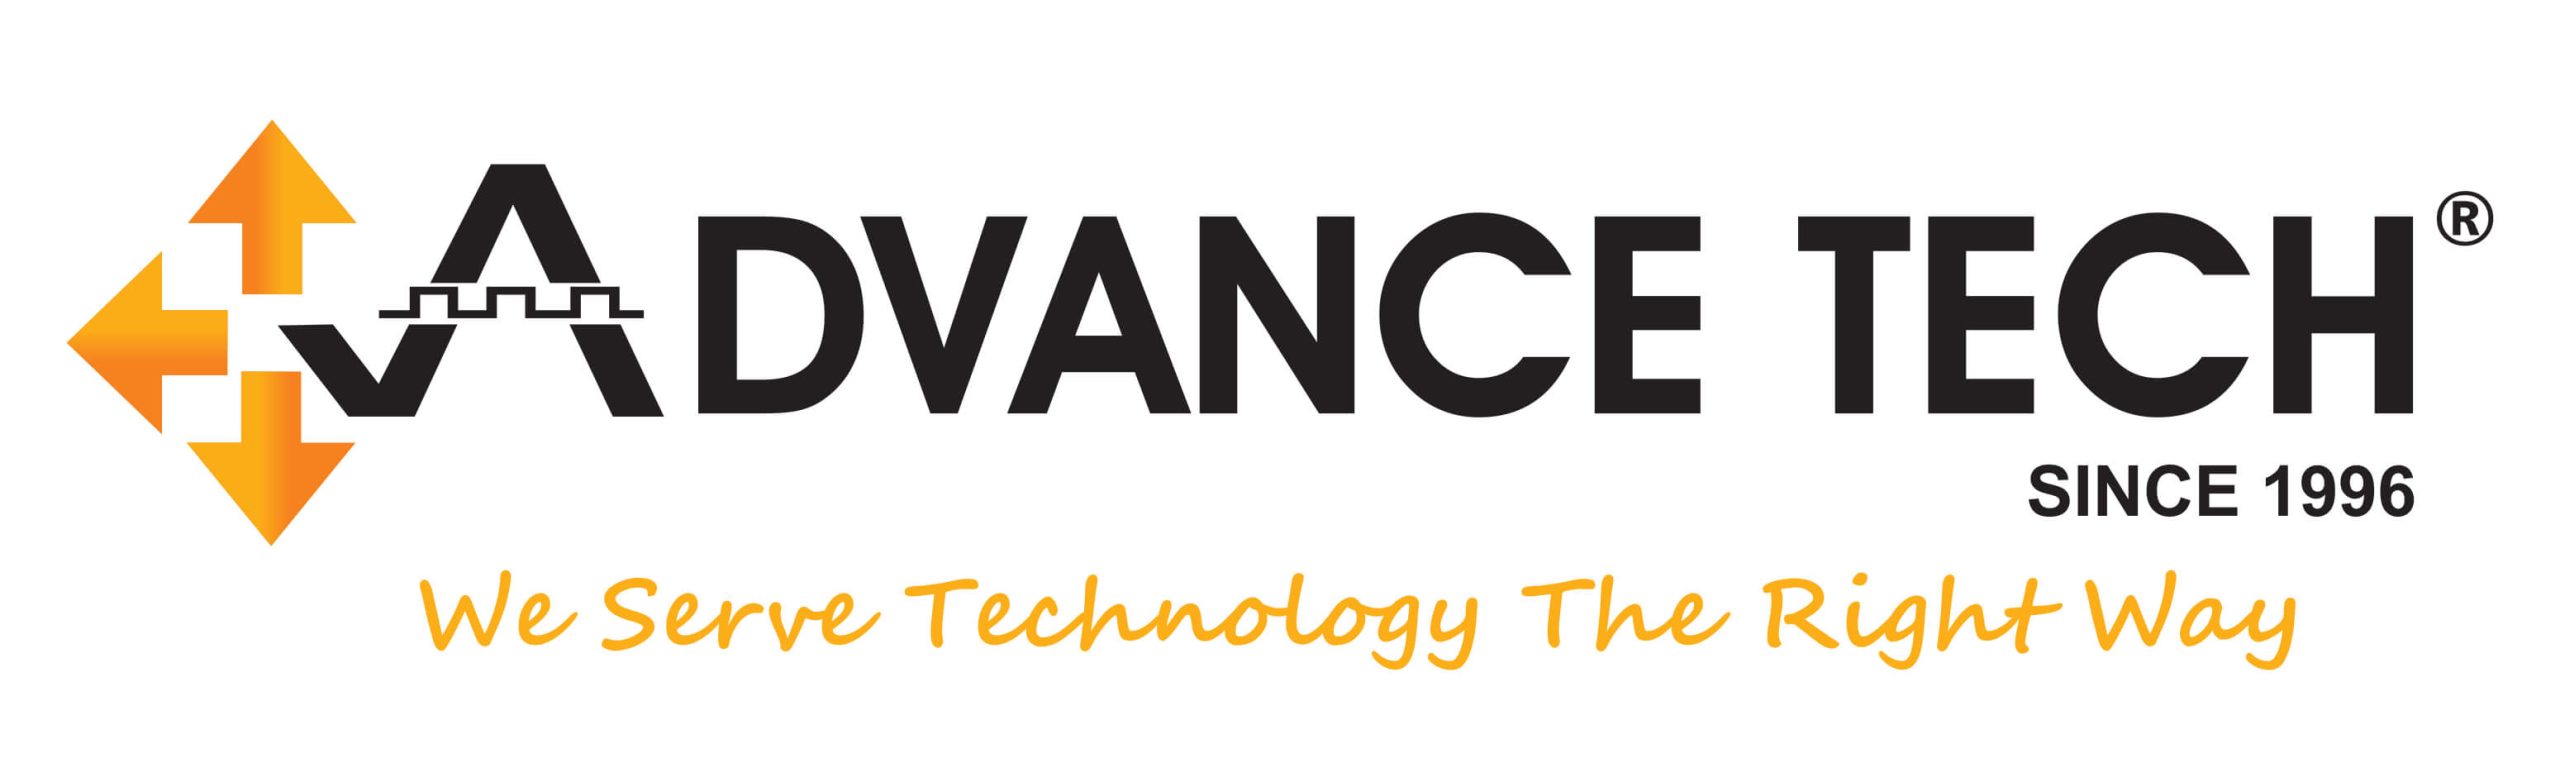 Advance Tech Services (P) Ltd.